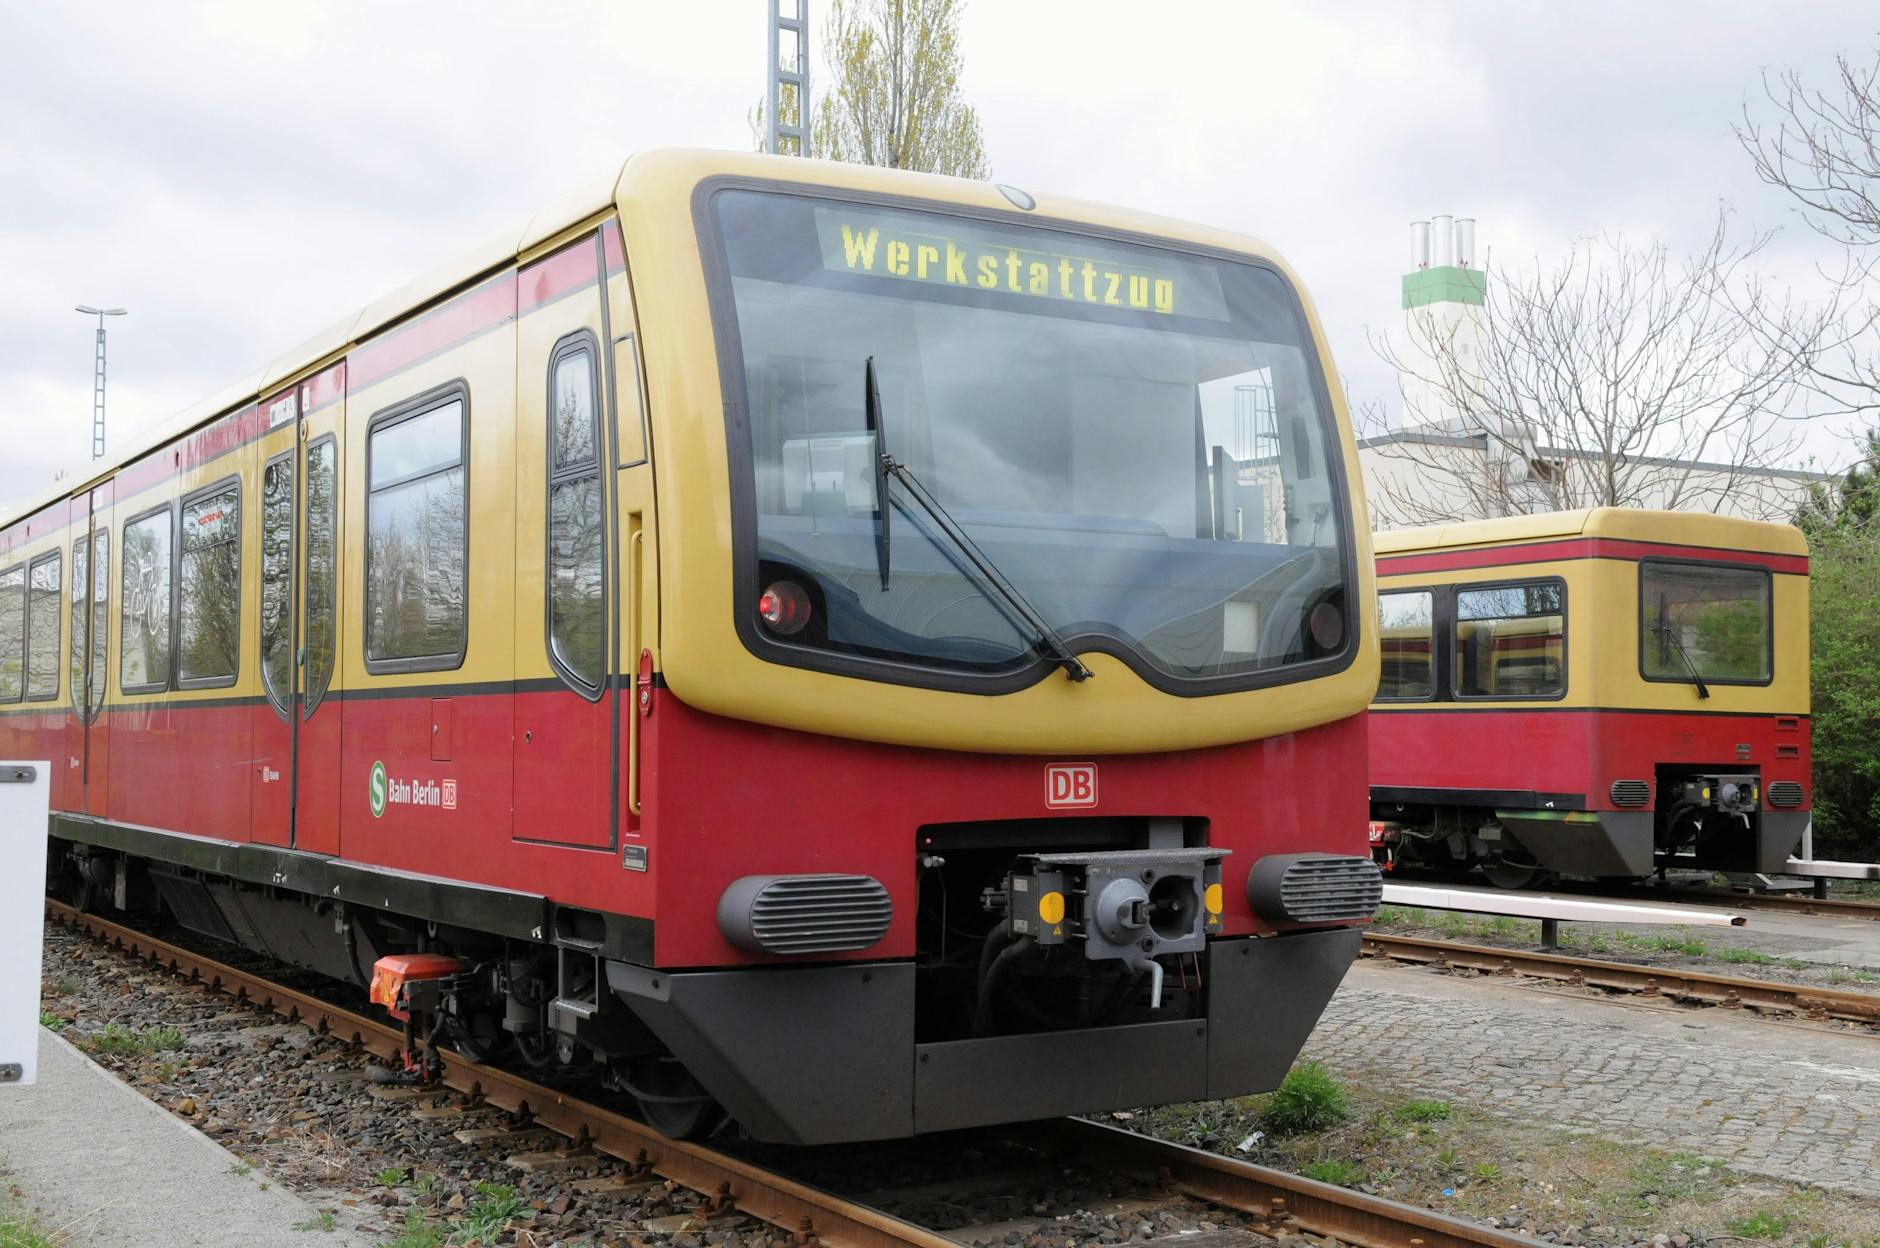 Geheimprojekt: Neue Farben für die S-Bahn Berlin in Planung